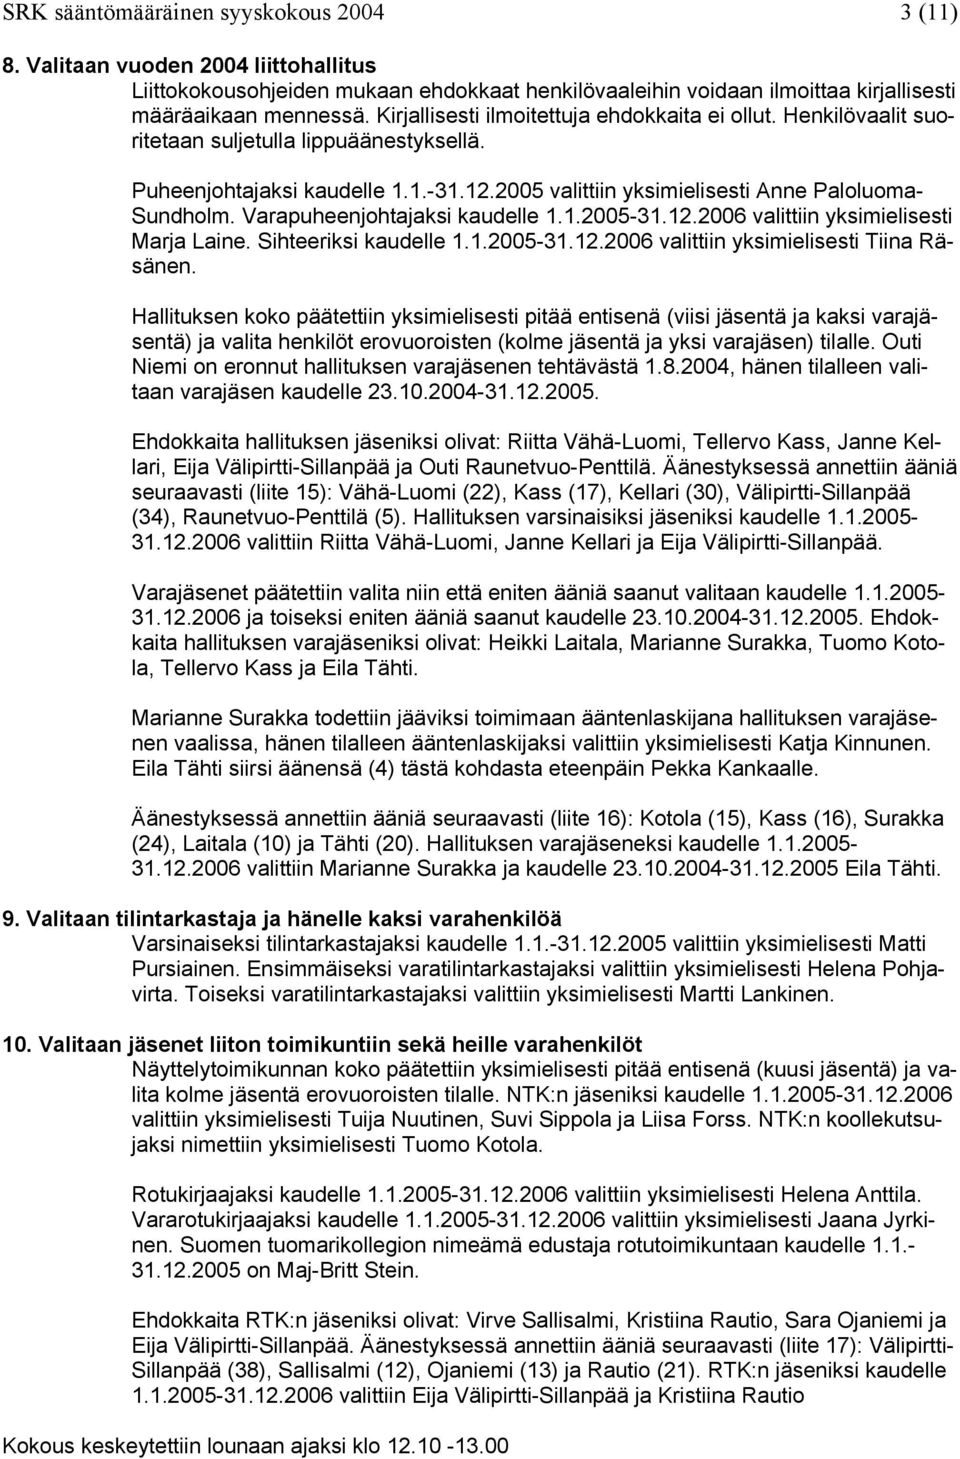 Varapuheenjohtajaksi kaudelle 1.1.2005-31.12.2006 valittiin yksimielisesti Marja Laine. Sihteeriksi kaudelle 1.1.2005-31.12.2006 valittiin yksimielisesti Tiina Räsänen.